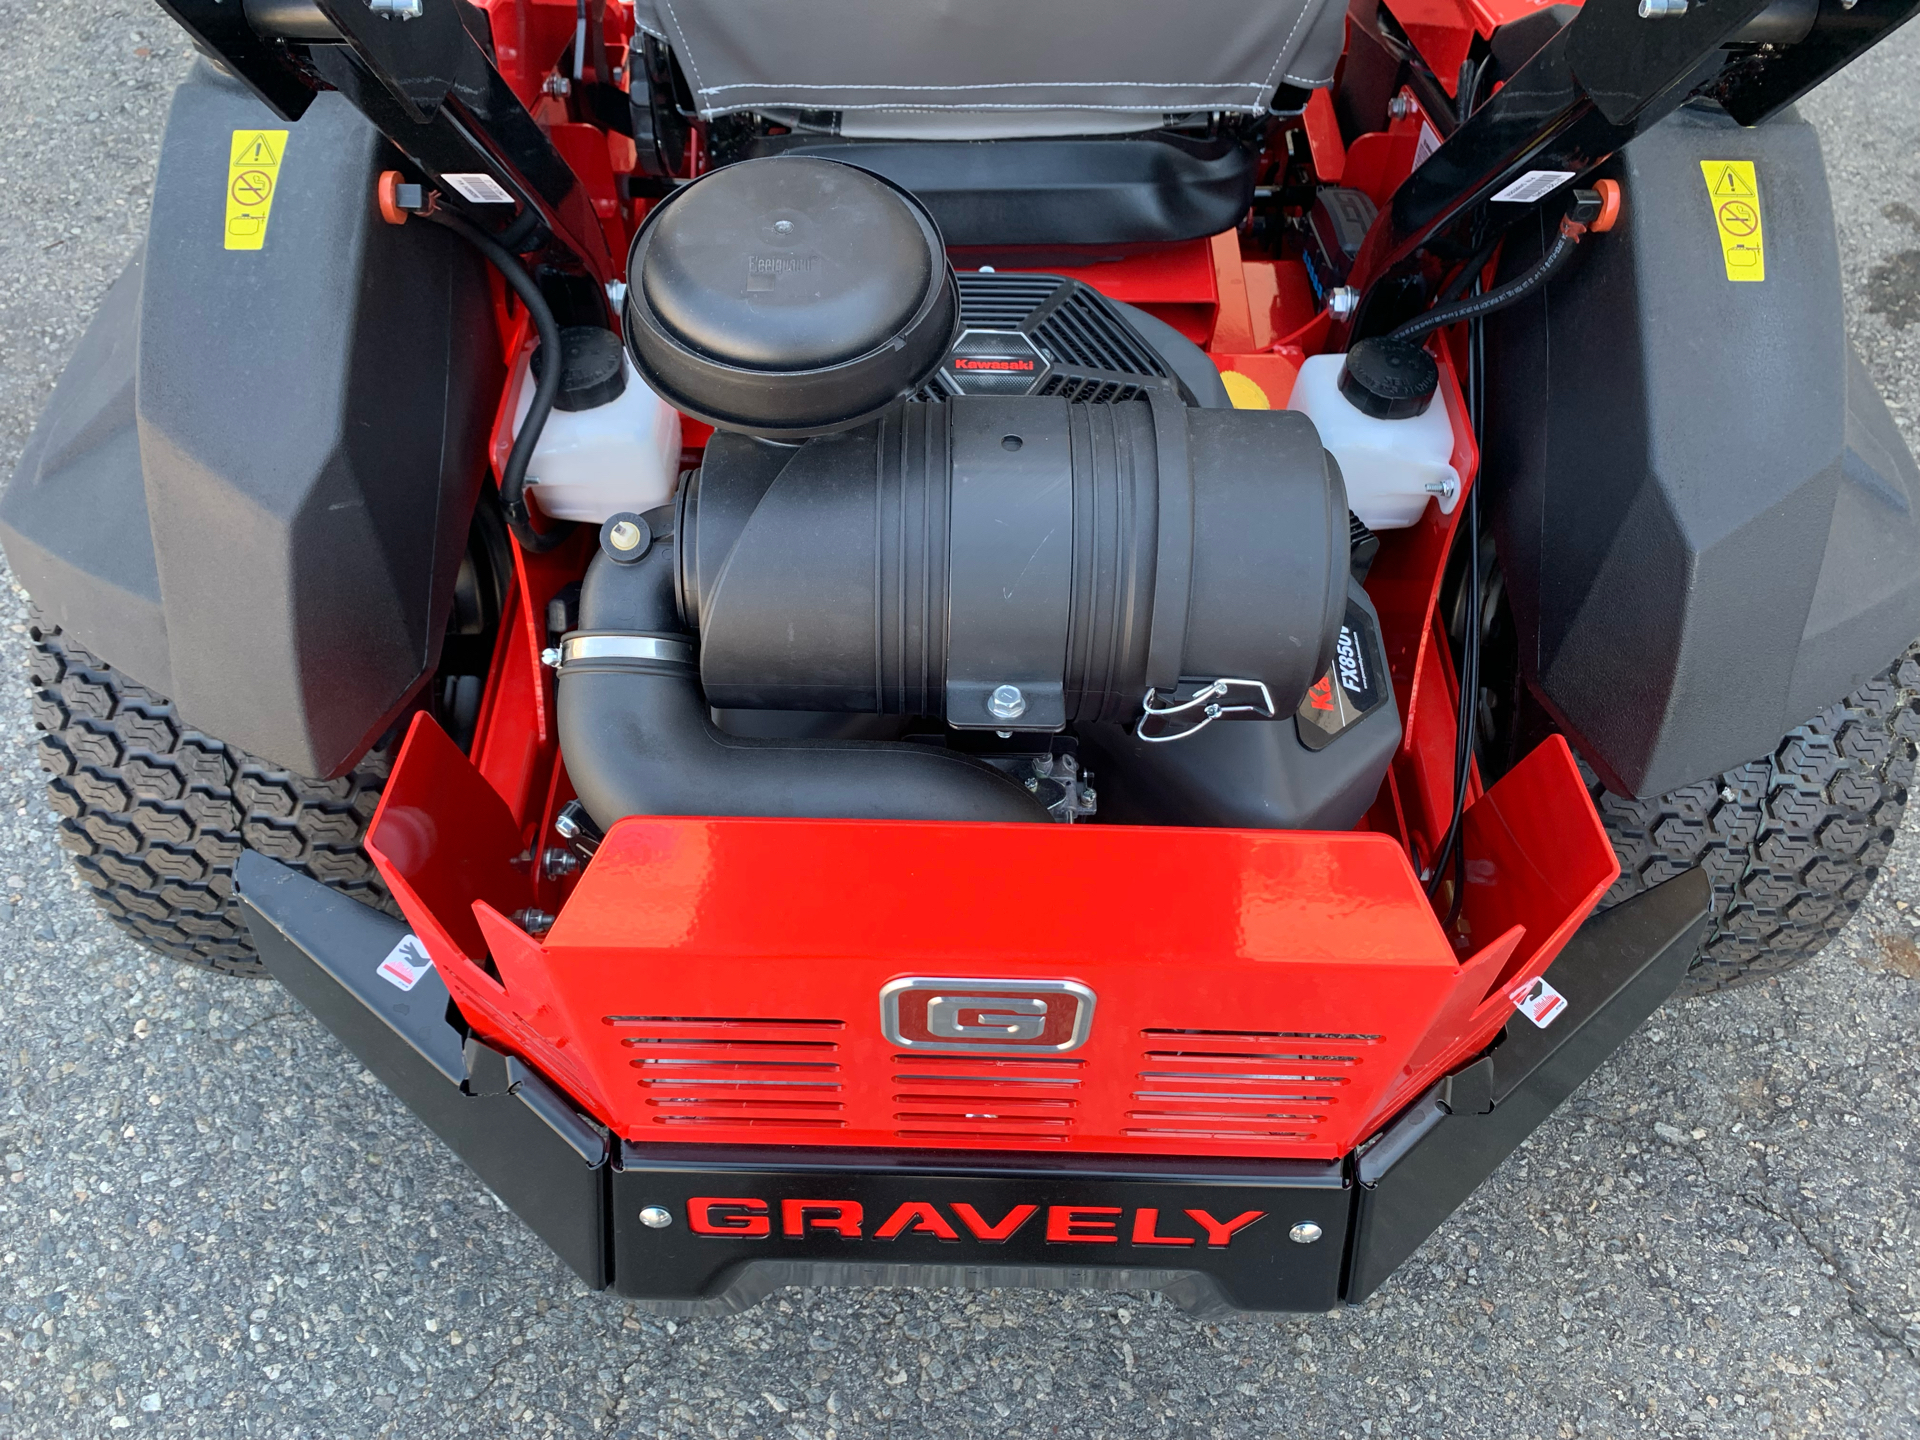 2022 Gravely USA Pro-Turn 260 60 in. Kawasaki FX850V 27 hp in Vidalia, Georgia - Photo 8